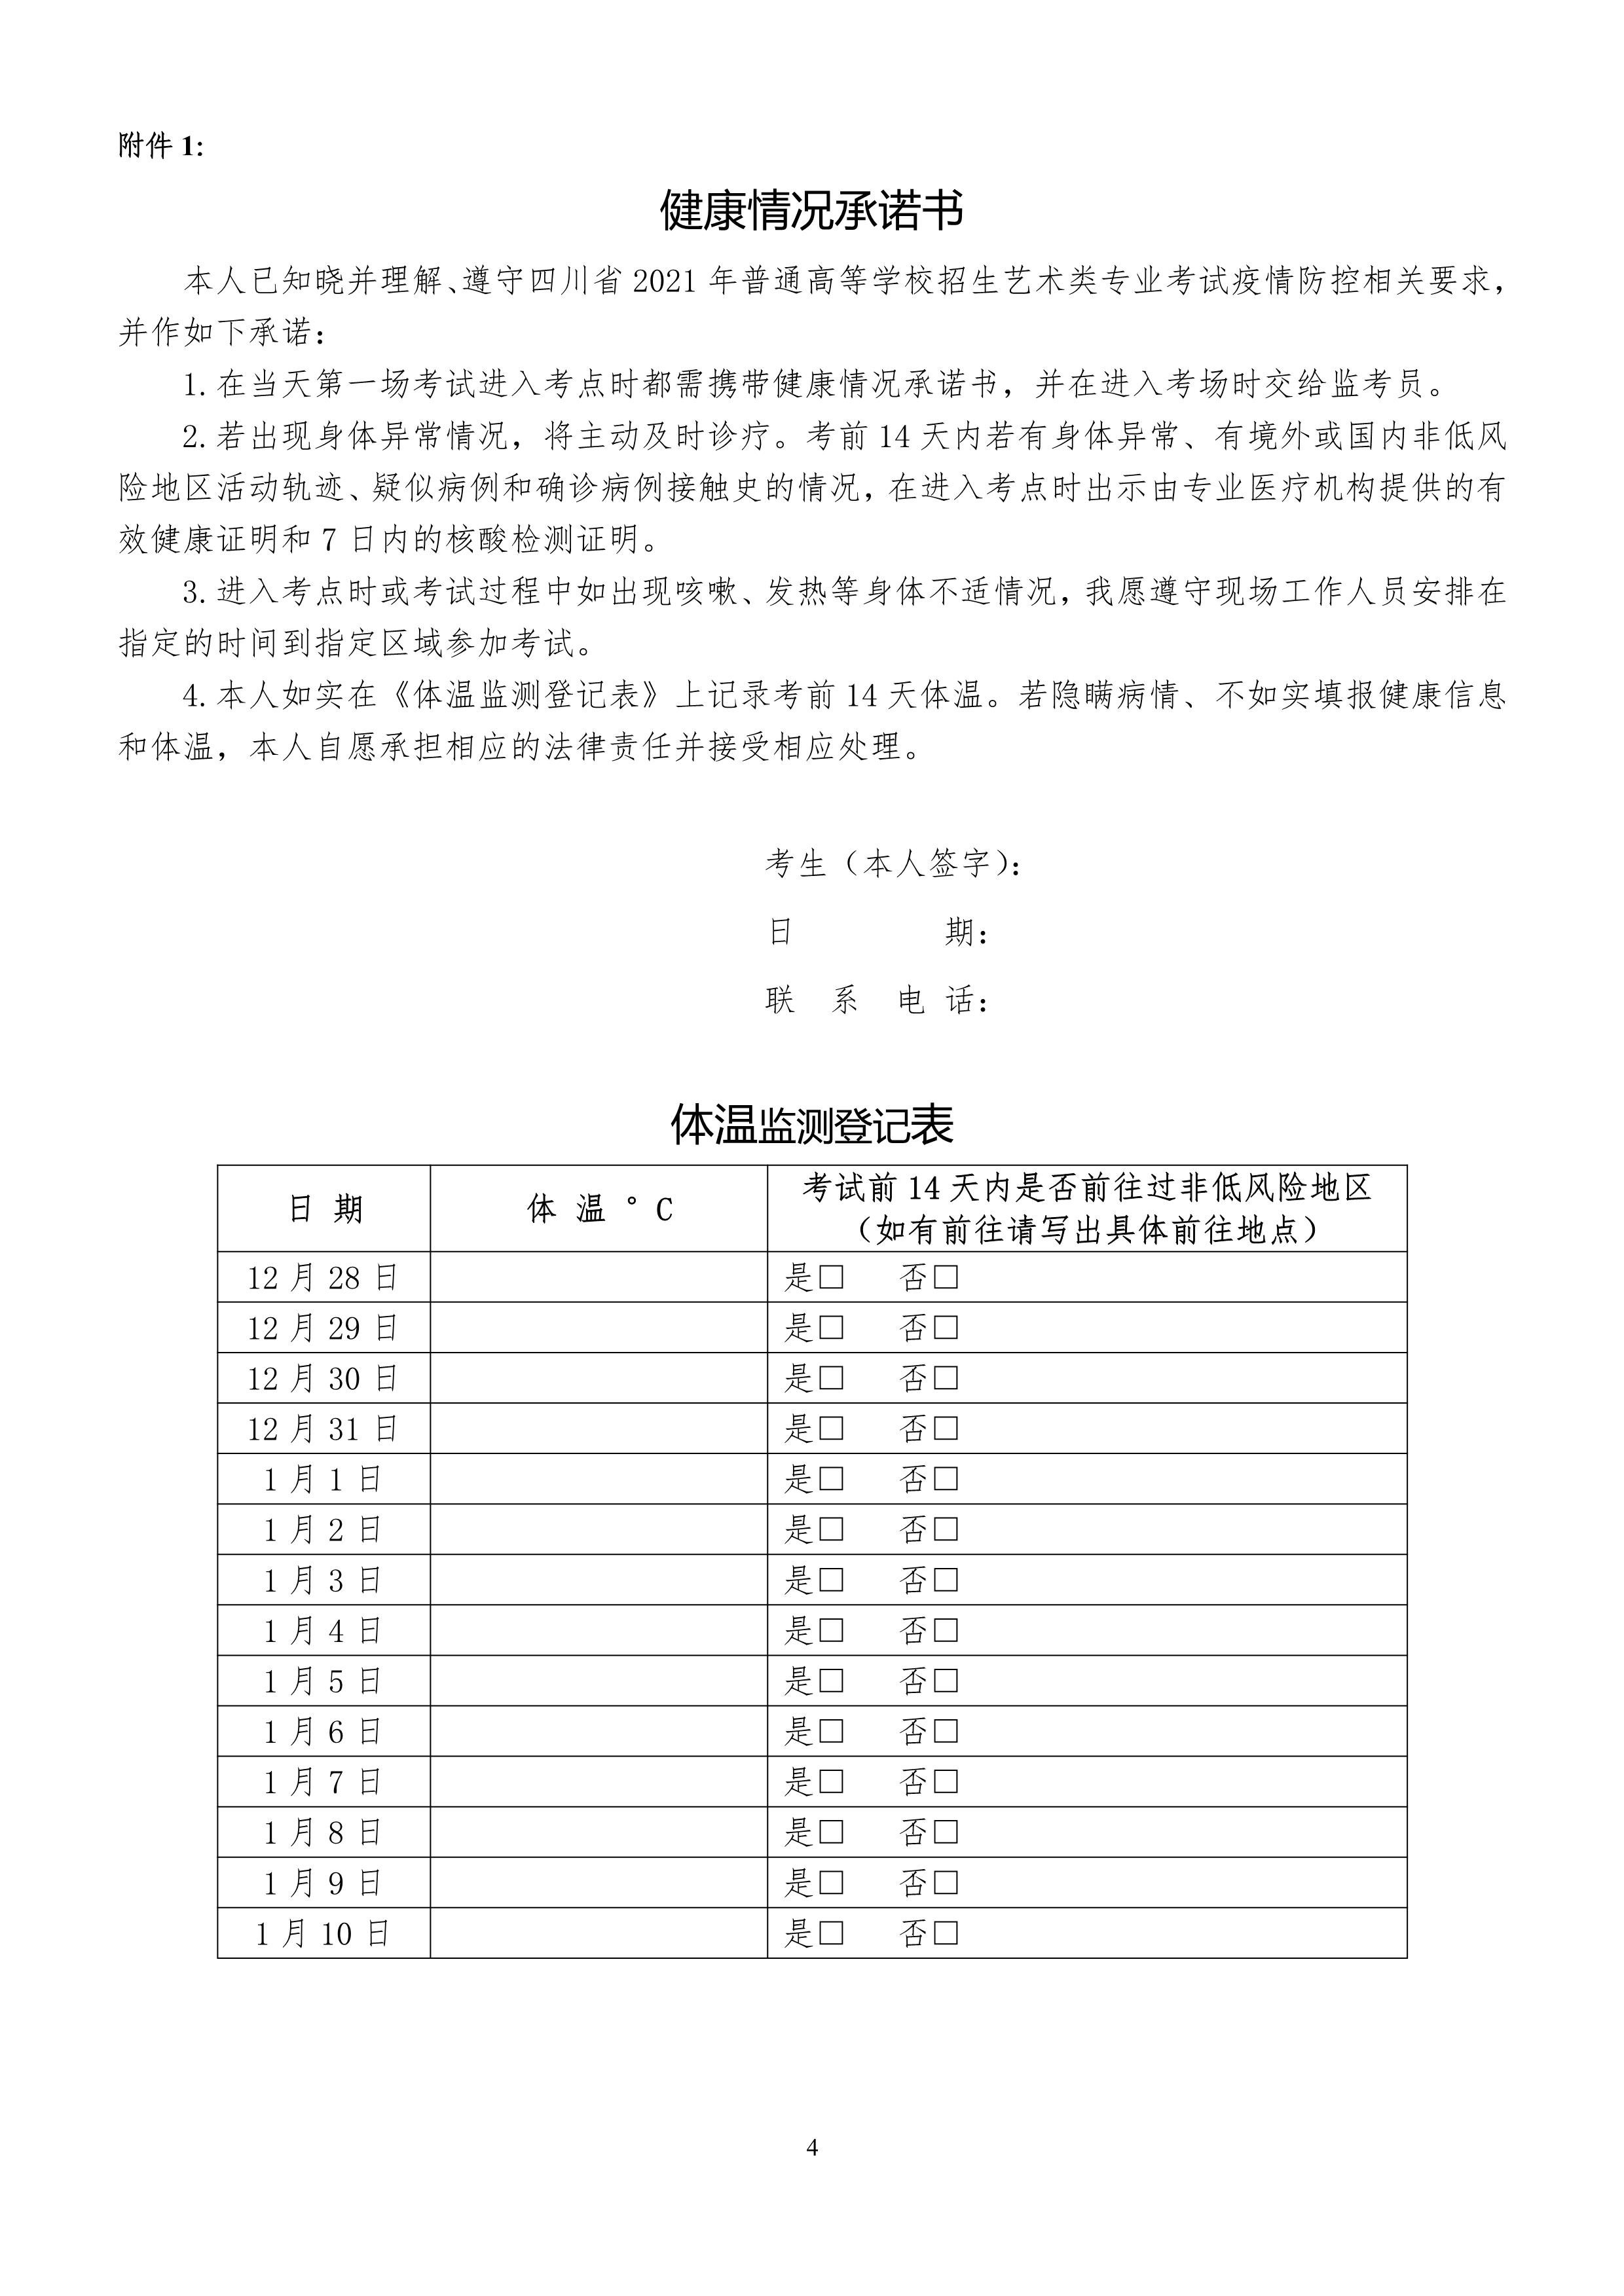 1.四川省2021年普通高校招生音乐类专业考试考生须知_4.jpg